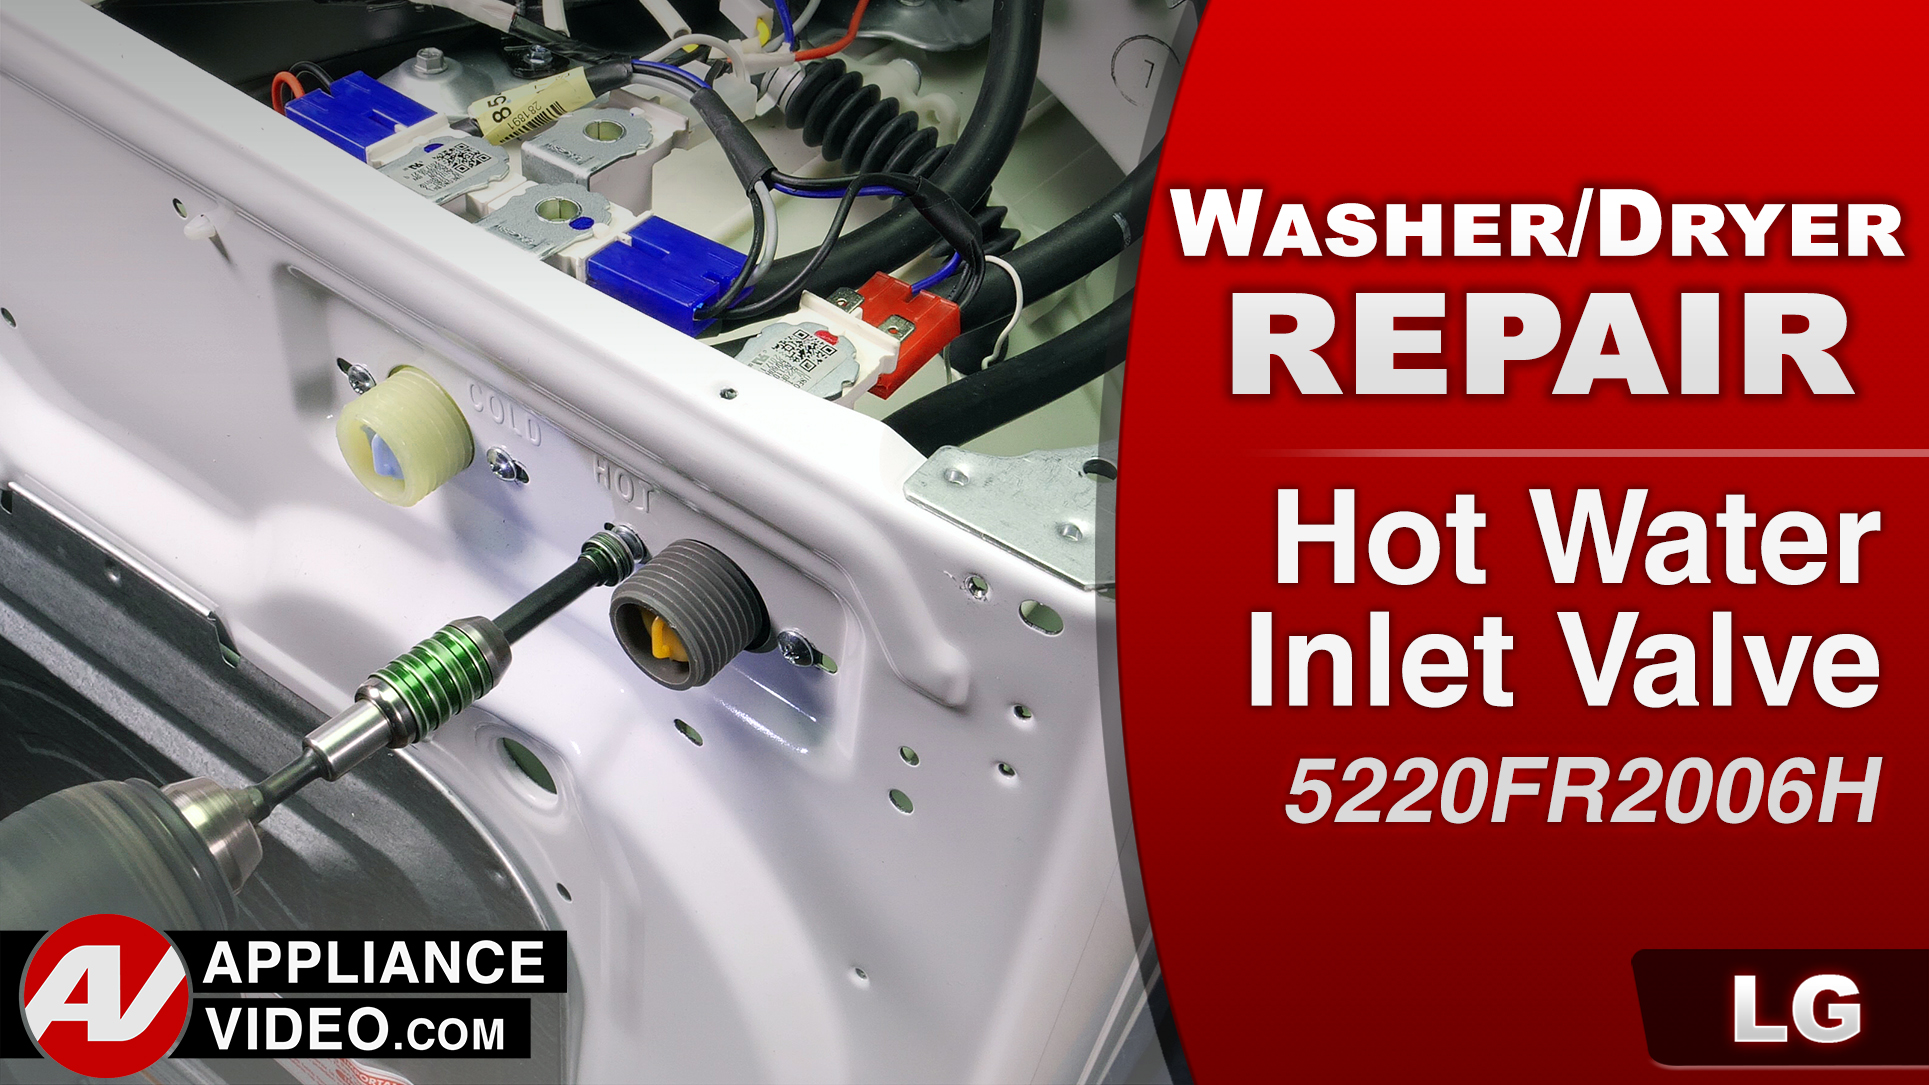 LG WM3488HW Washer – 1E Error Code – Hot Water Inlet Valve